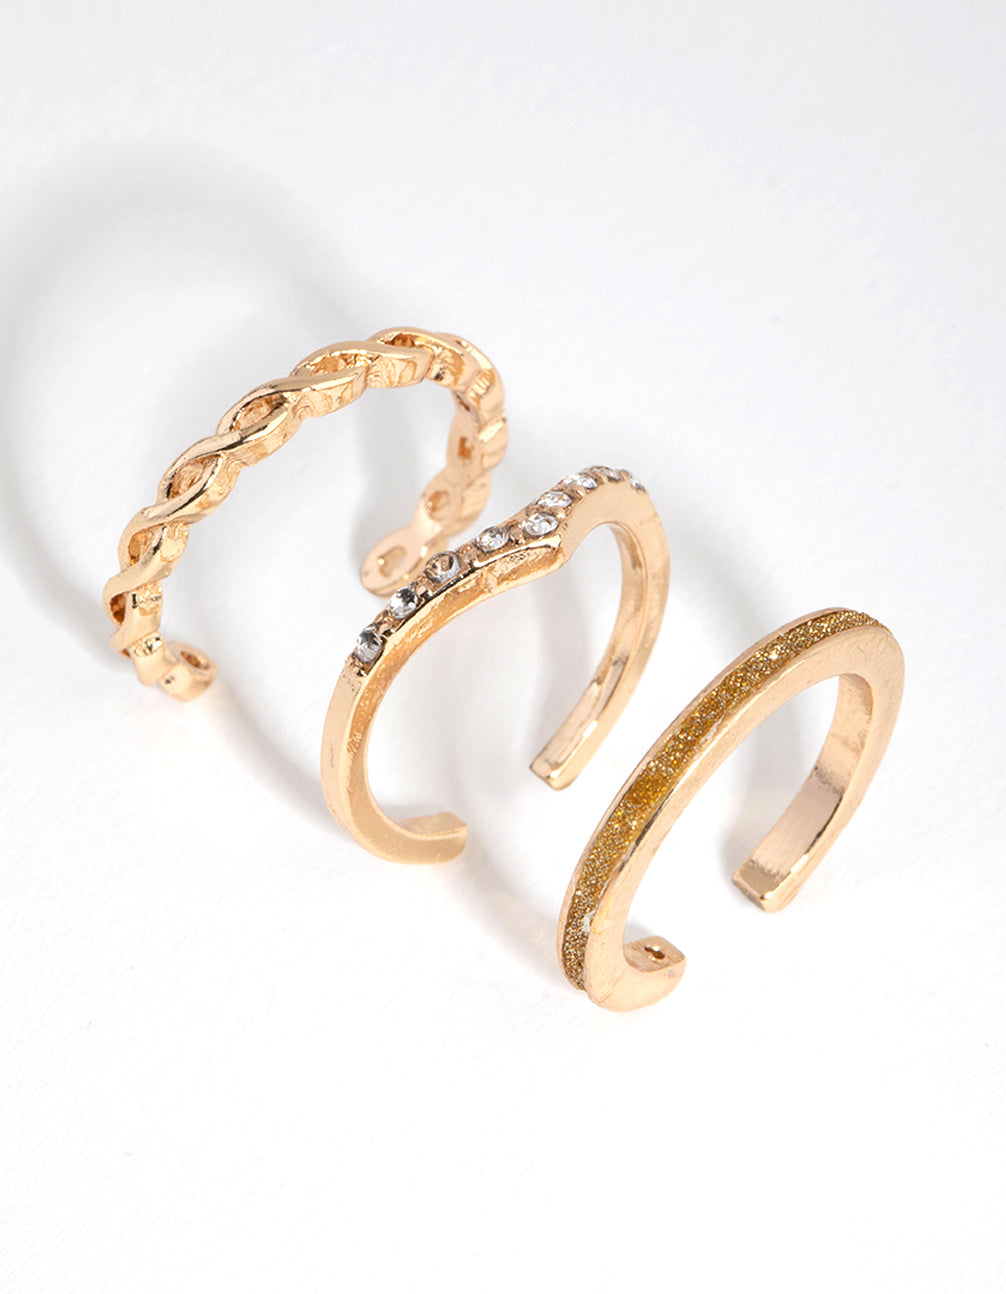 Minimal Gold Heart Toe Ring, Gold Toe Ring, Adjustable Toe Ring, Beach Toe  Ring, Minimal Toe Ring, Midi Ring, Gold Summer Ring MT-68 - Etsy